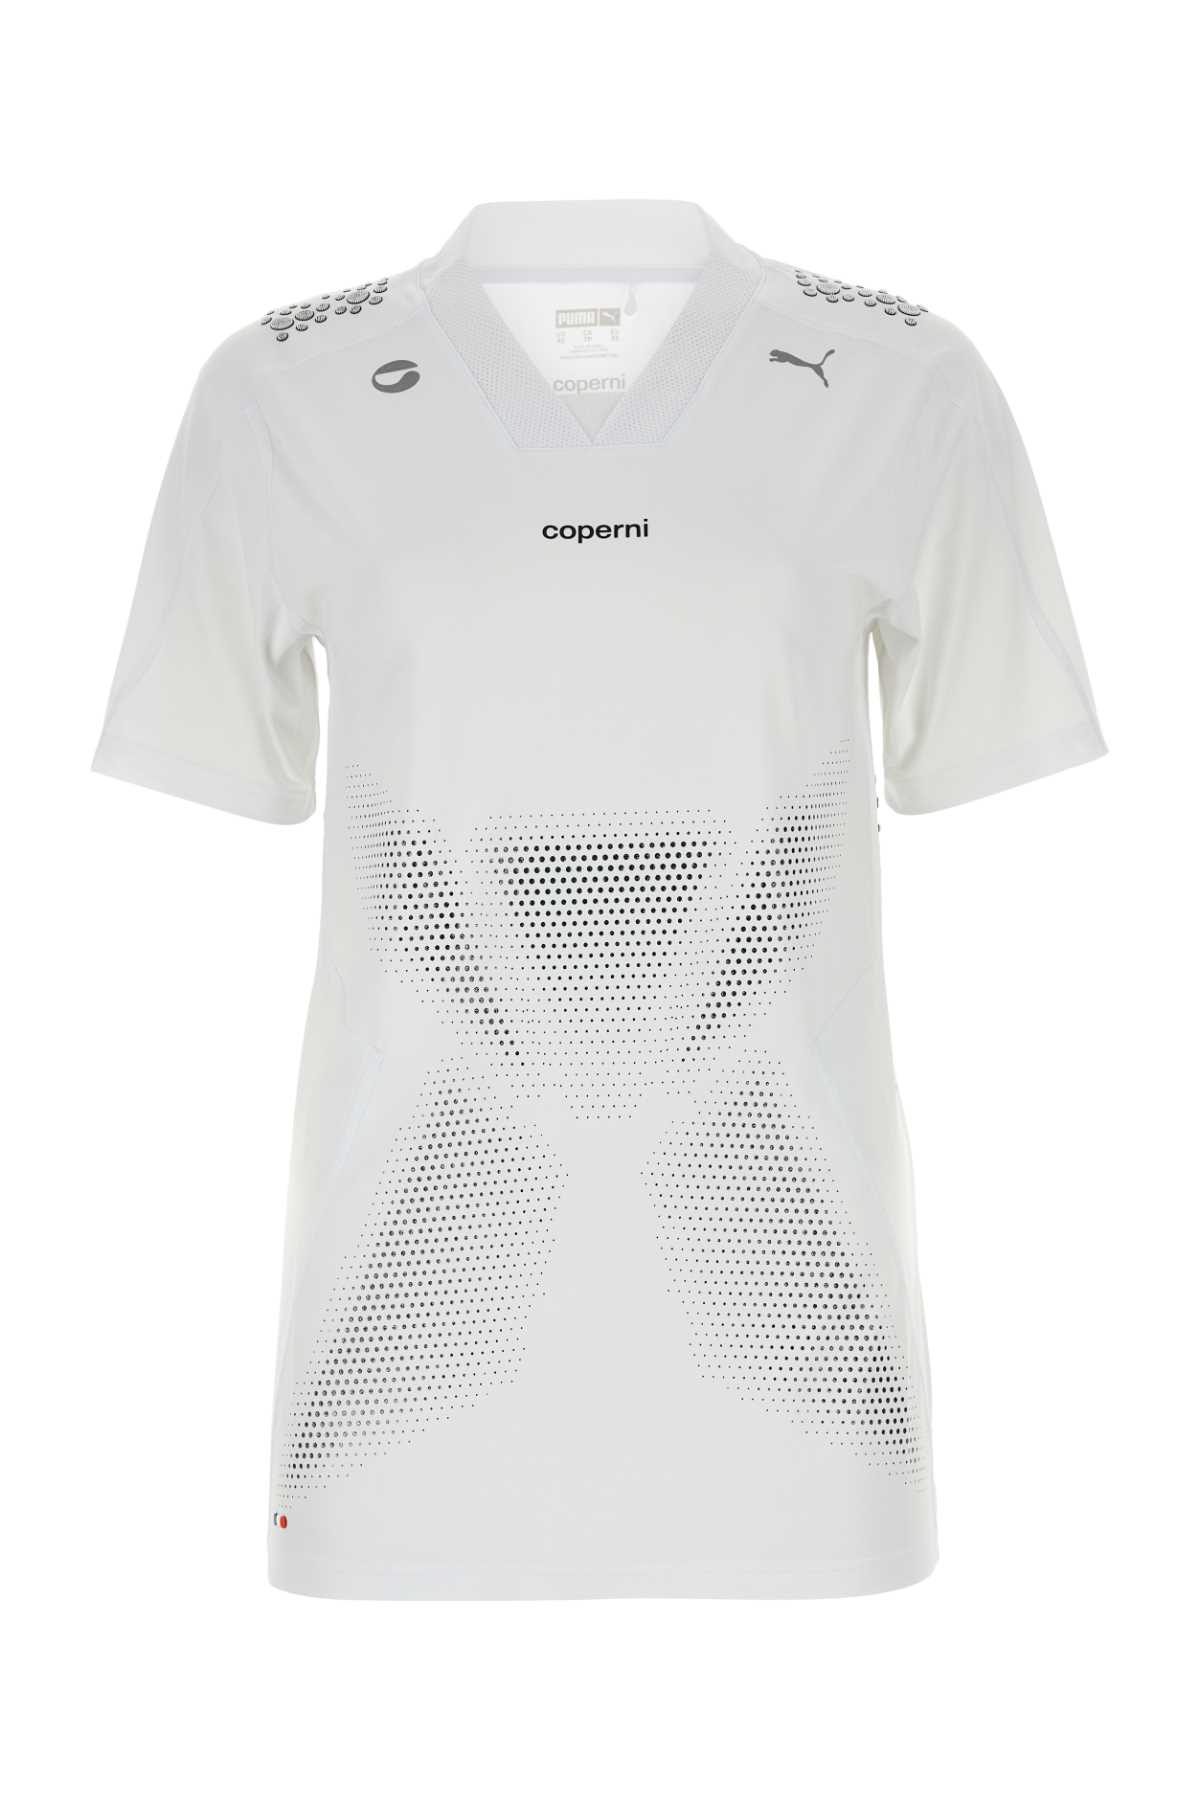 Coperni White Stretch Nylon  X Puma T-shirt In Gray